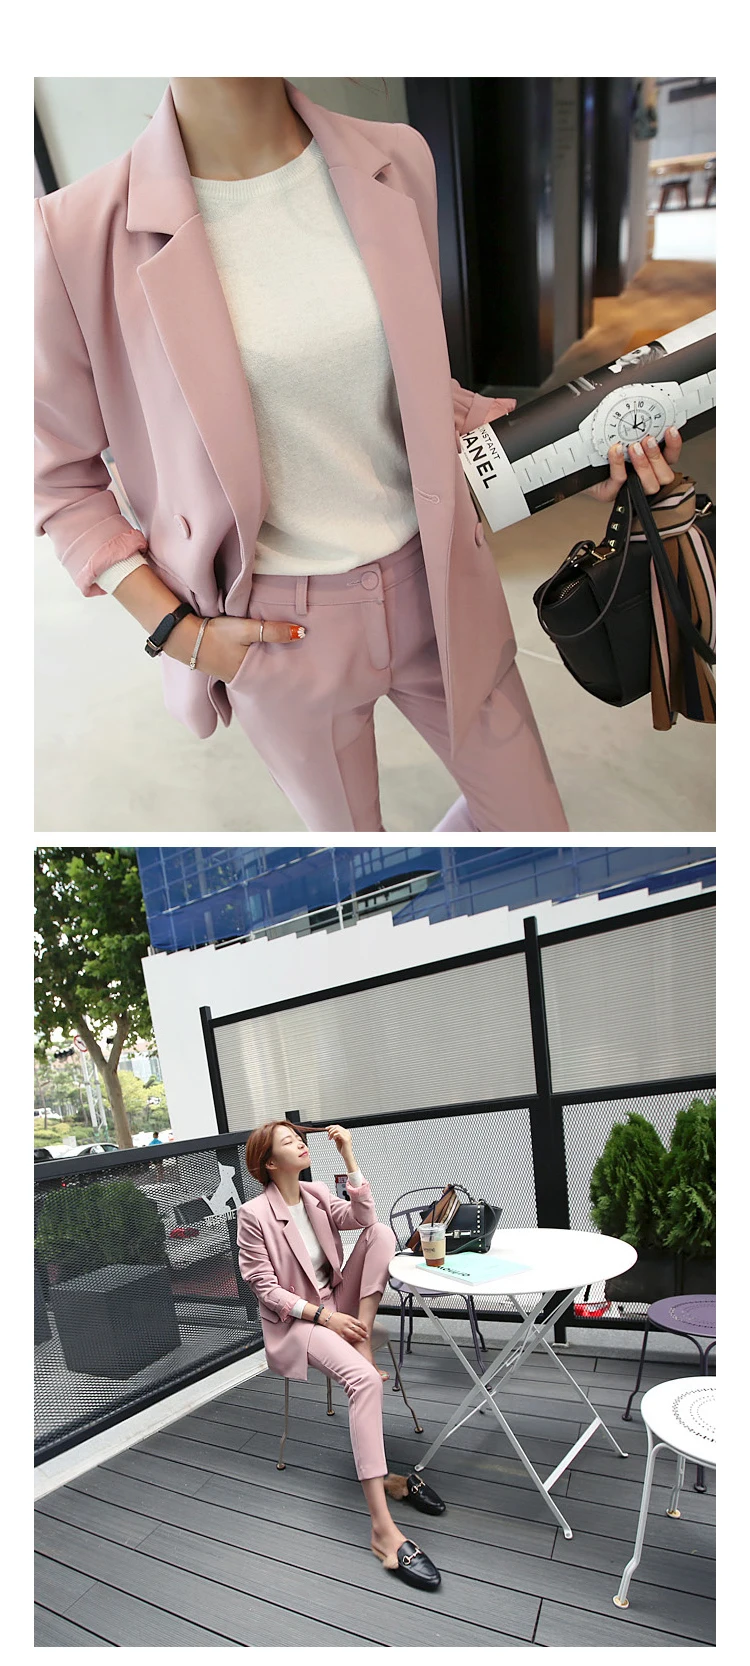 Комплект из двух предметов, женский стиль, тонкий двубортный розовый маленький костюм, OL пиджак+ повседневные Элегантные девять штанов